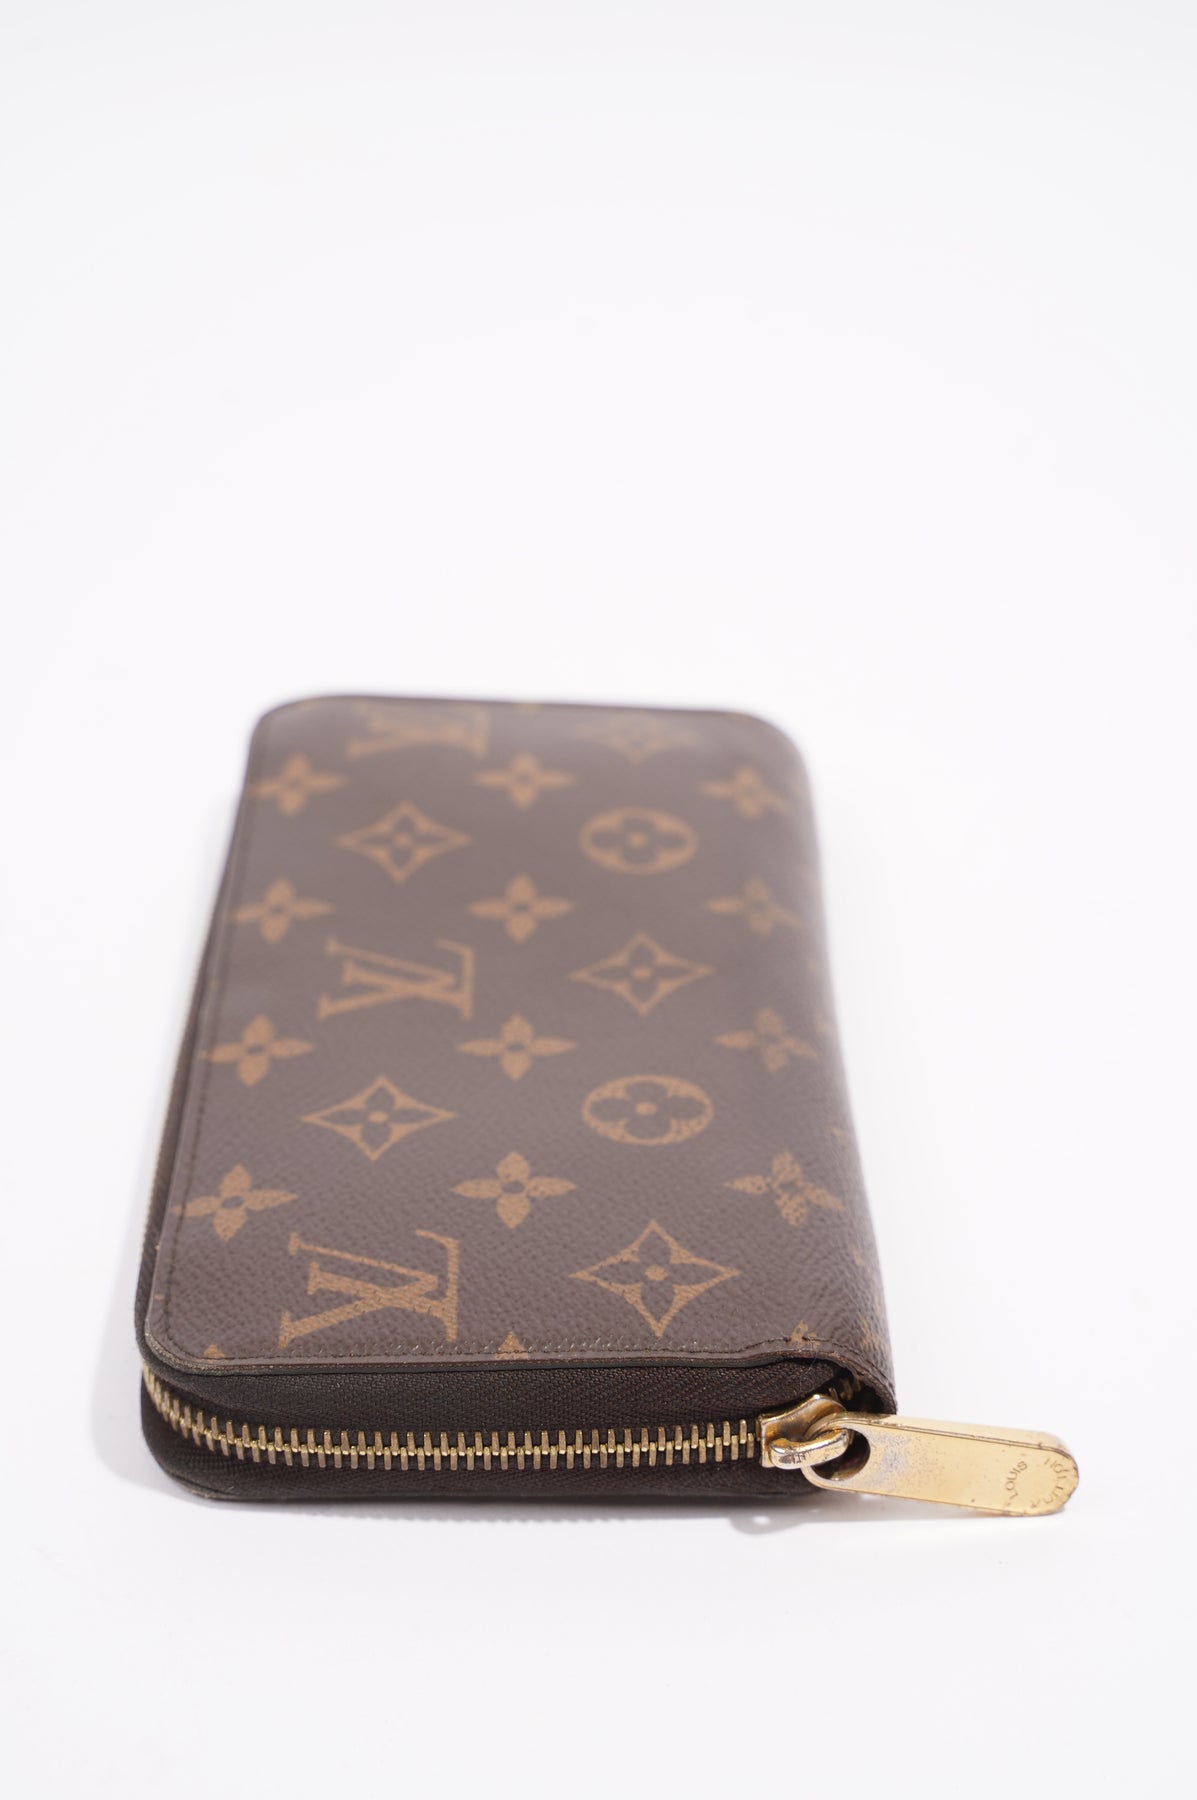 Sold at Auction: A Louis Vuitton Zippy XL Gents Wallet. Monogram